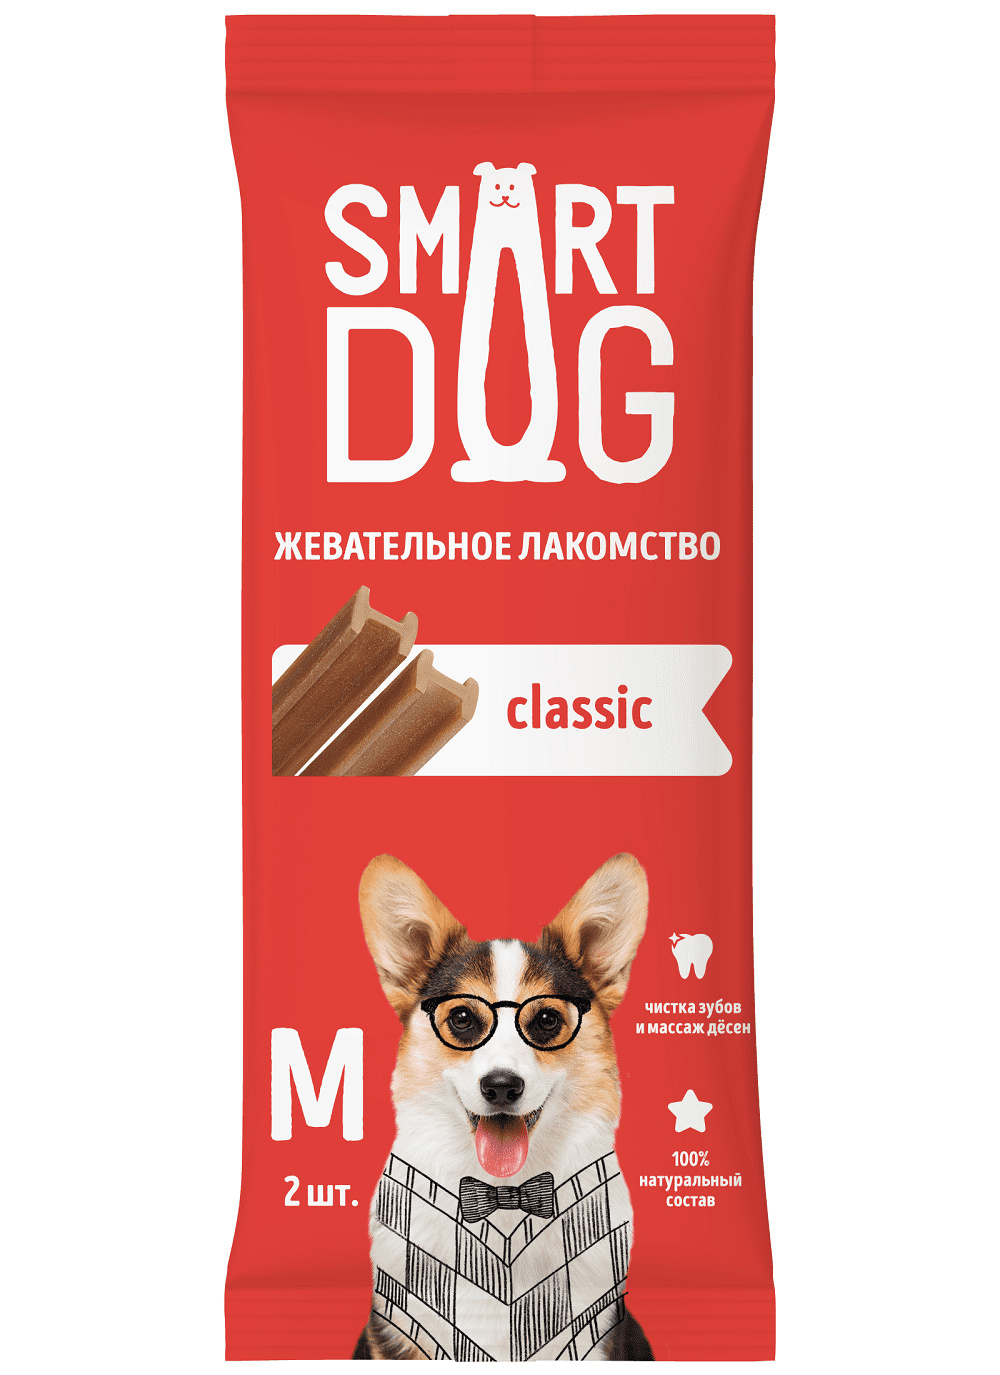 Smart Dog лакомства Smart Dog лакомства жевательное лакомство с витаминами и минералами для собак и щенков (S) smart dog лакомства smart dog лакомства жевательное лакомство с витаминами и минералами для собак и щенков s